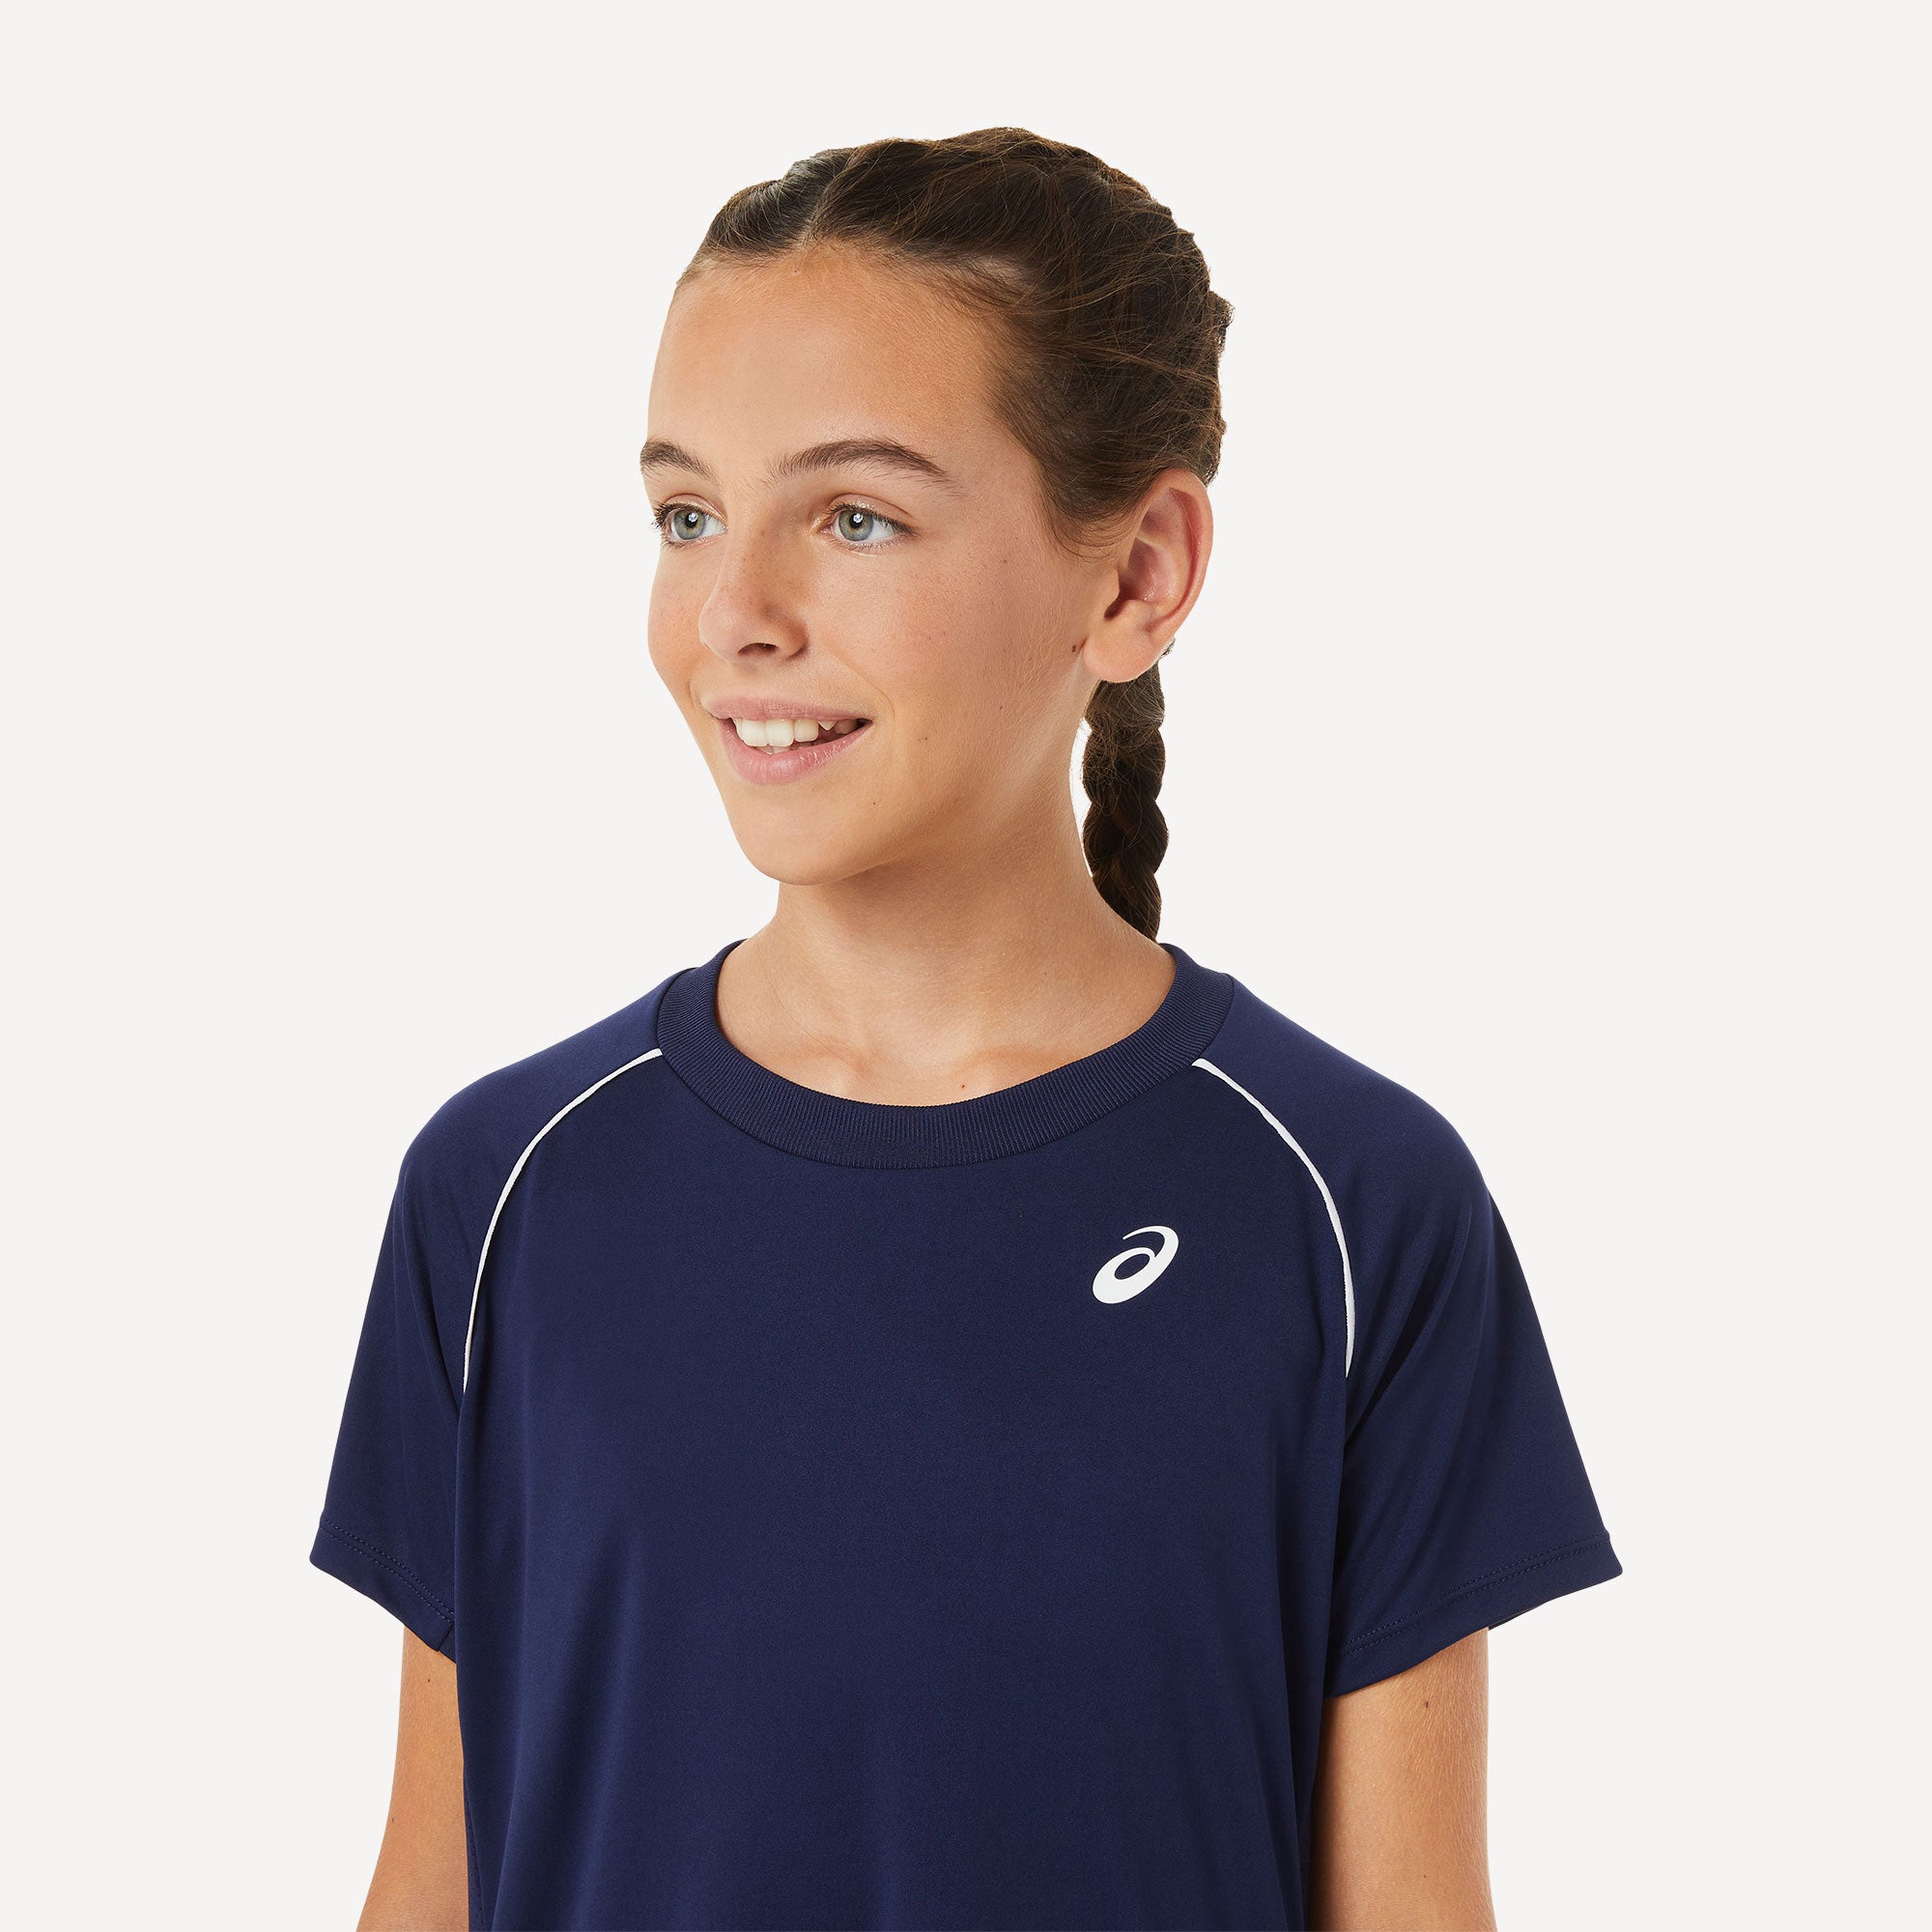 ASICS Girls' Tennis Shirt Blue (4)